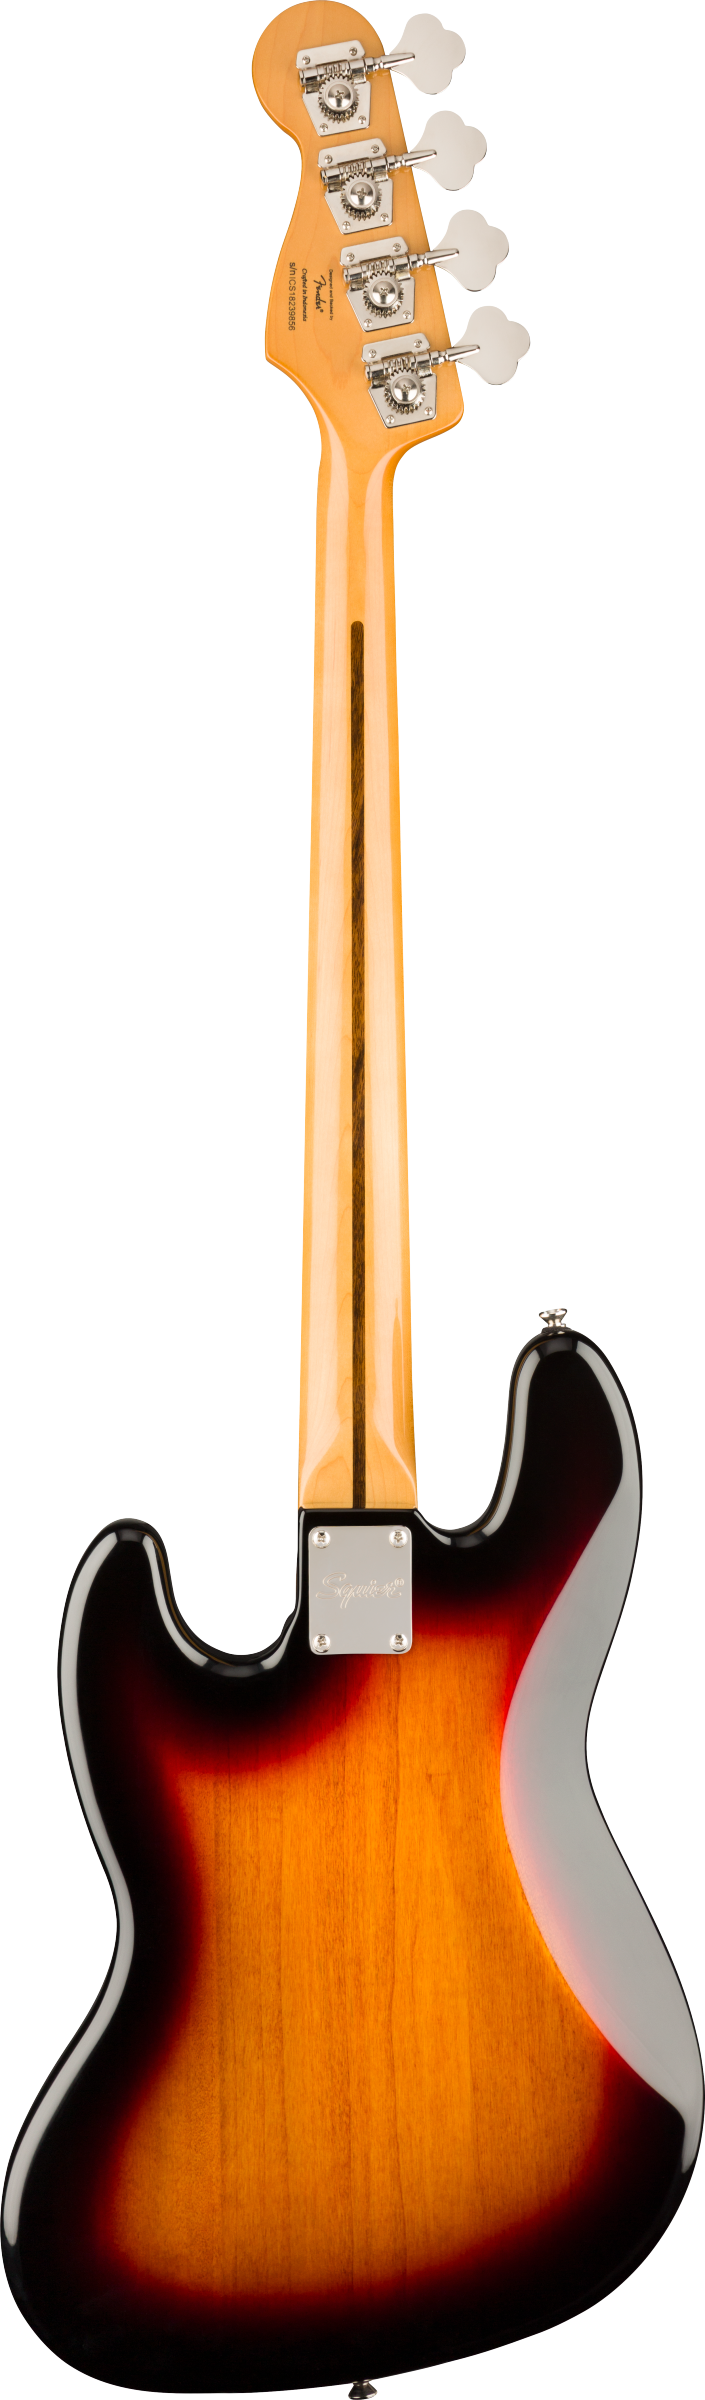 Shop　Tone　–　Laurel　Jazz　Classic　Sunburst　3-Color　Fingerboard　Guitars　'60s　Vibe　Squier　Bass